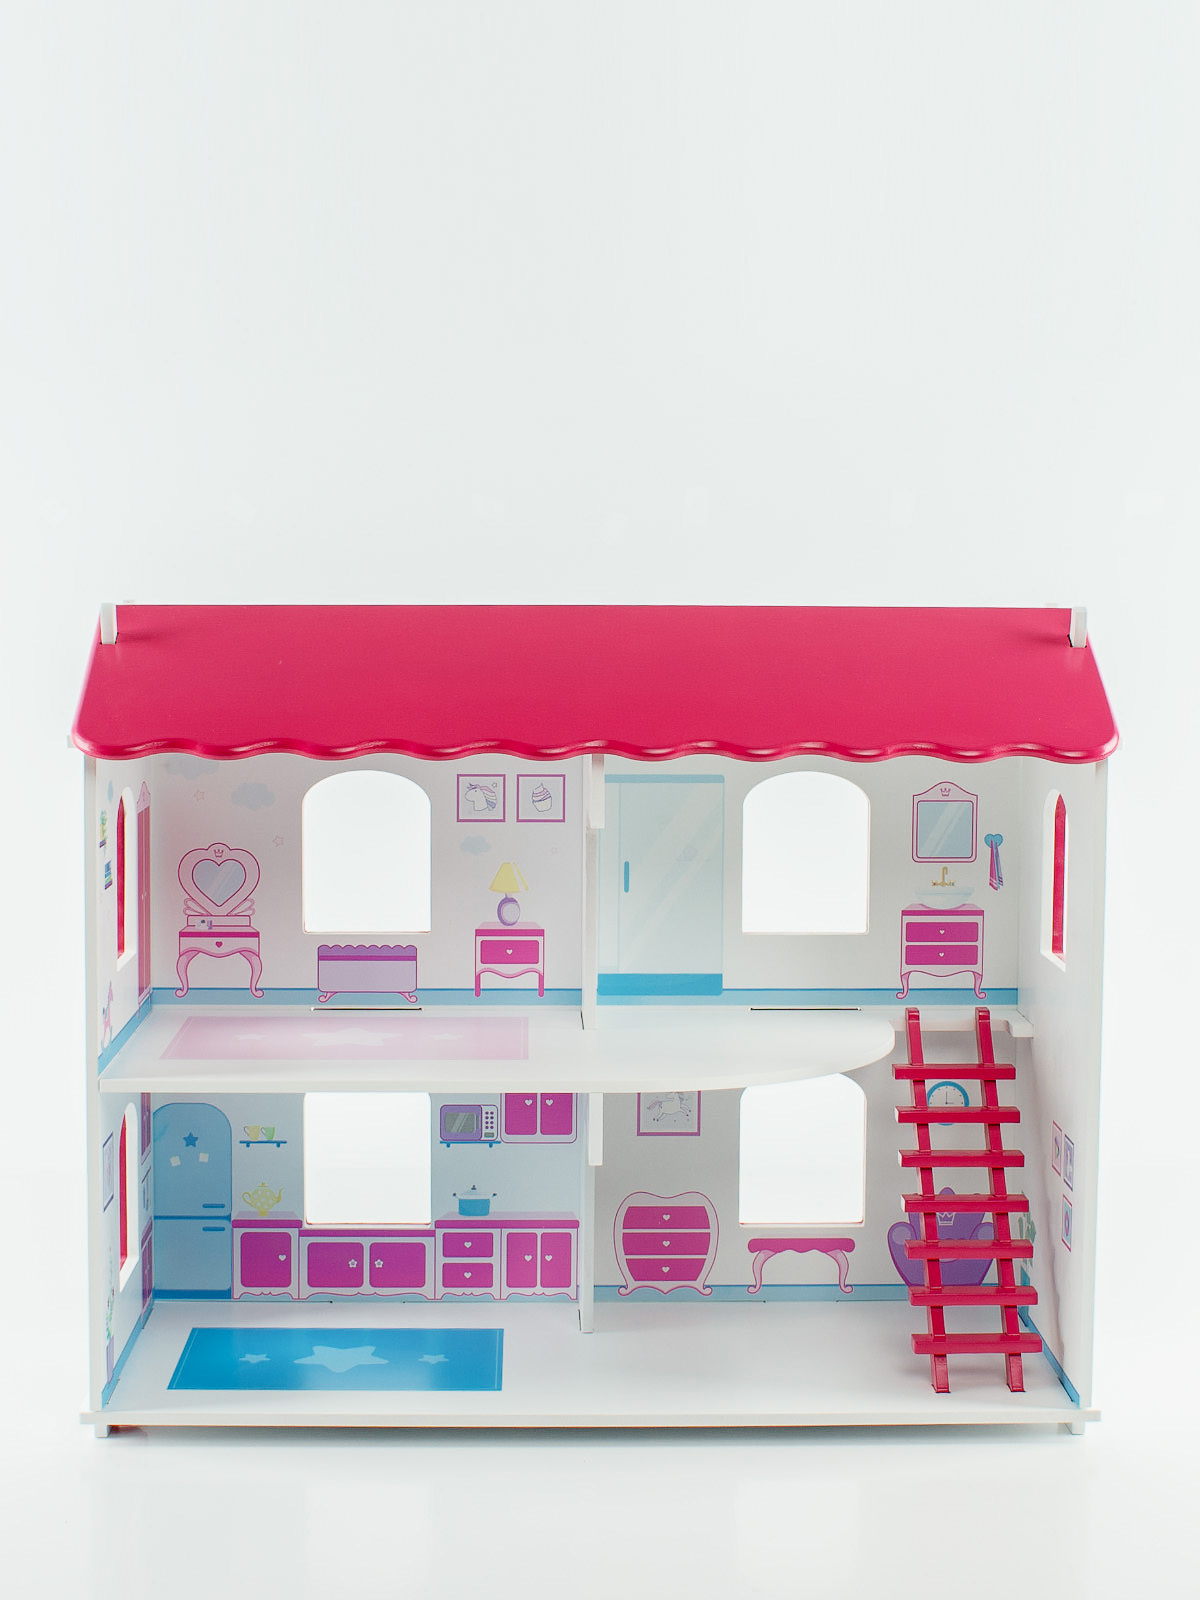 Дом для кукол "Карамель" ДКЛ002П с интерьером розовый дерево ТМ Коняша